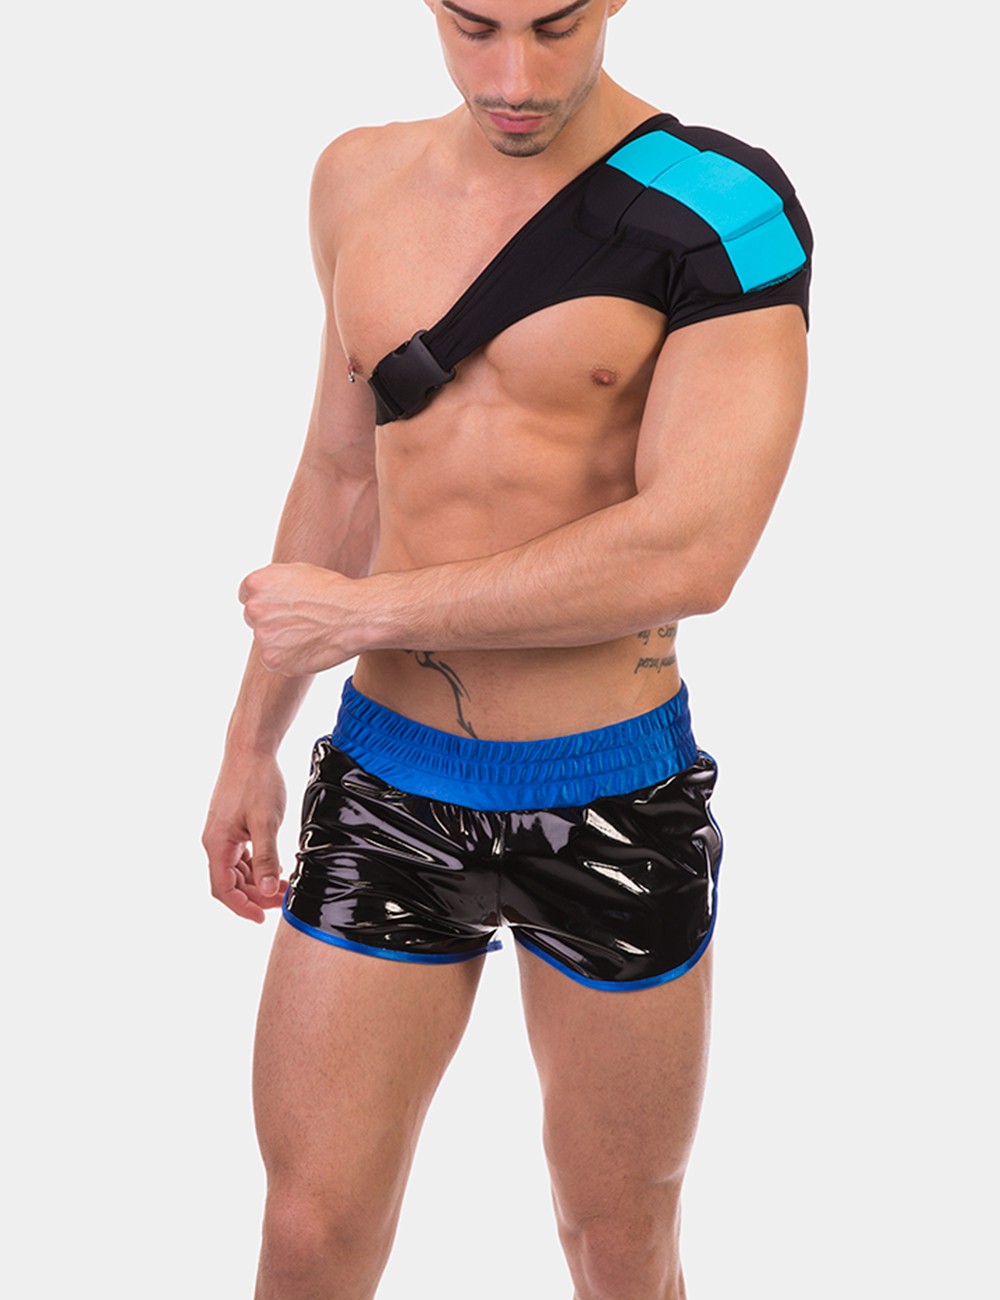 Disco Single Shoulder Pad  von Barcode Berlin Model " Pad  im Gaywear Fetisch Style 